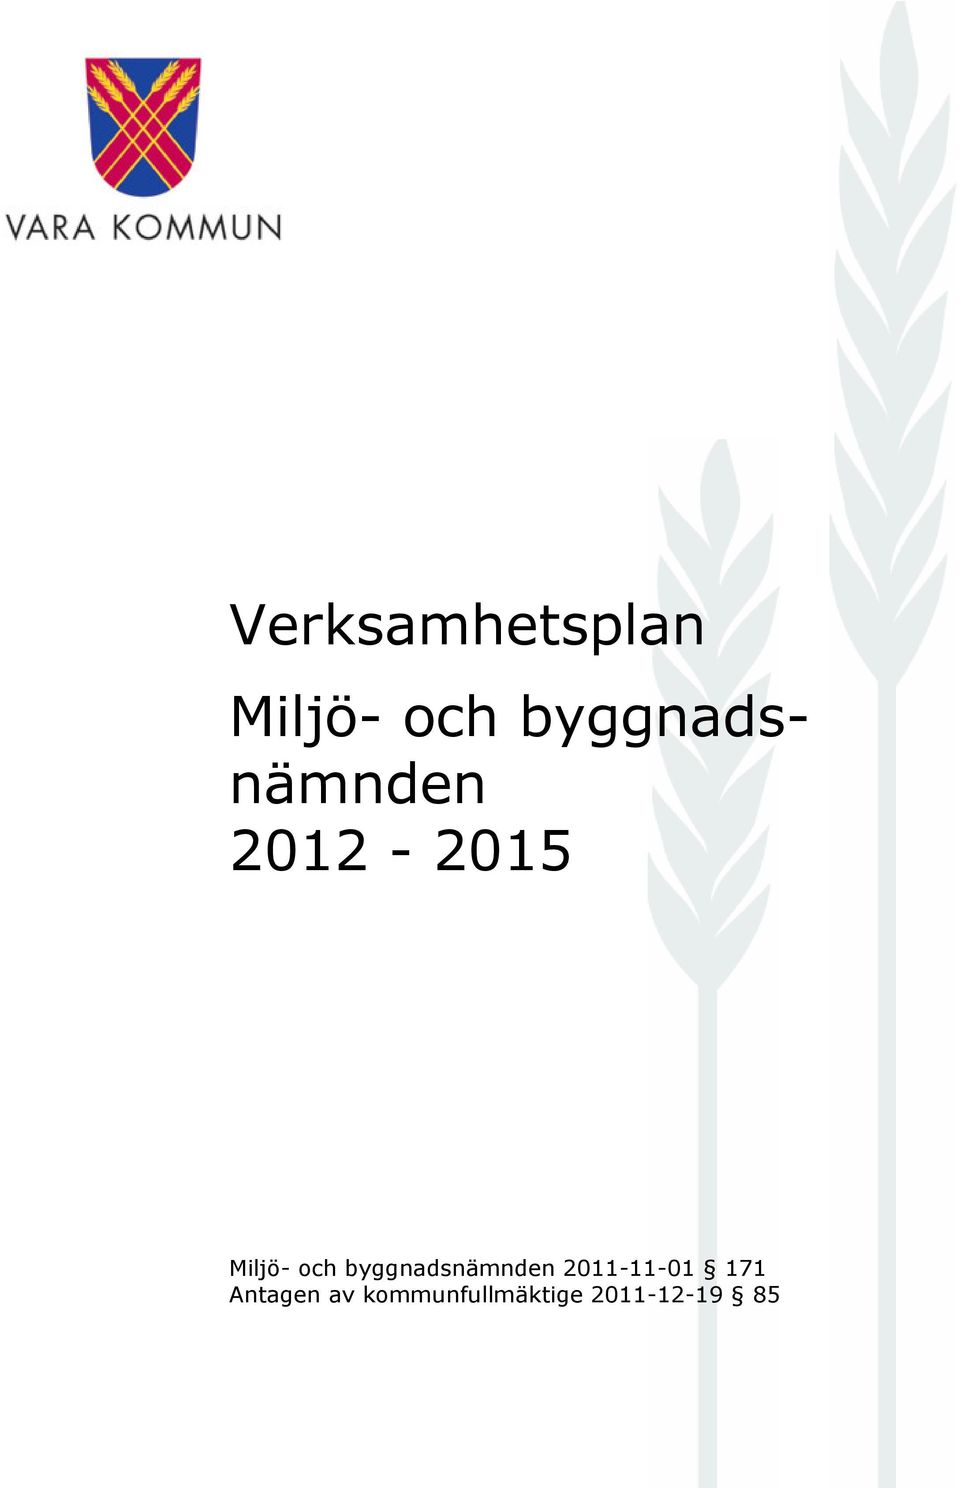 2012-2015 171 Antagen av